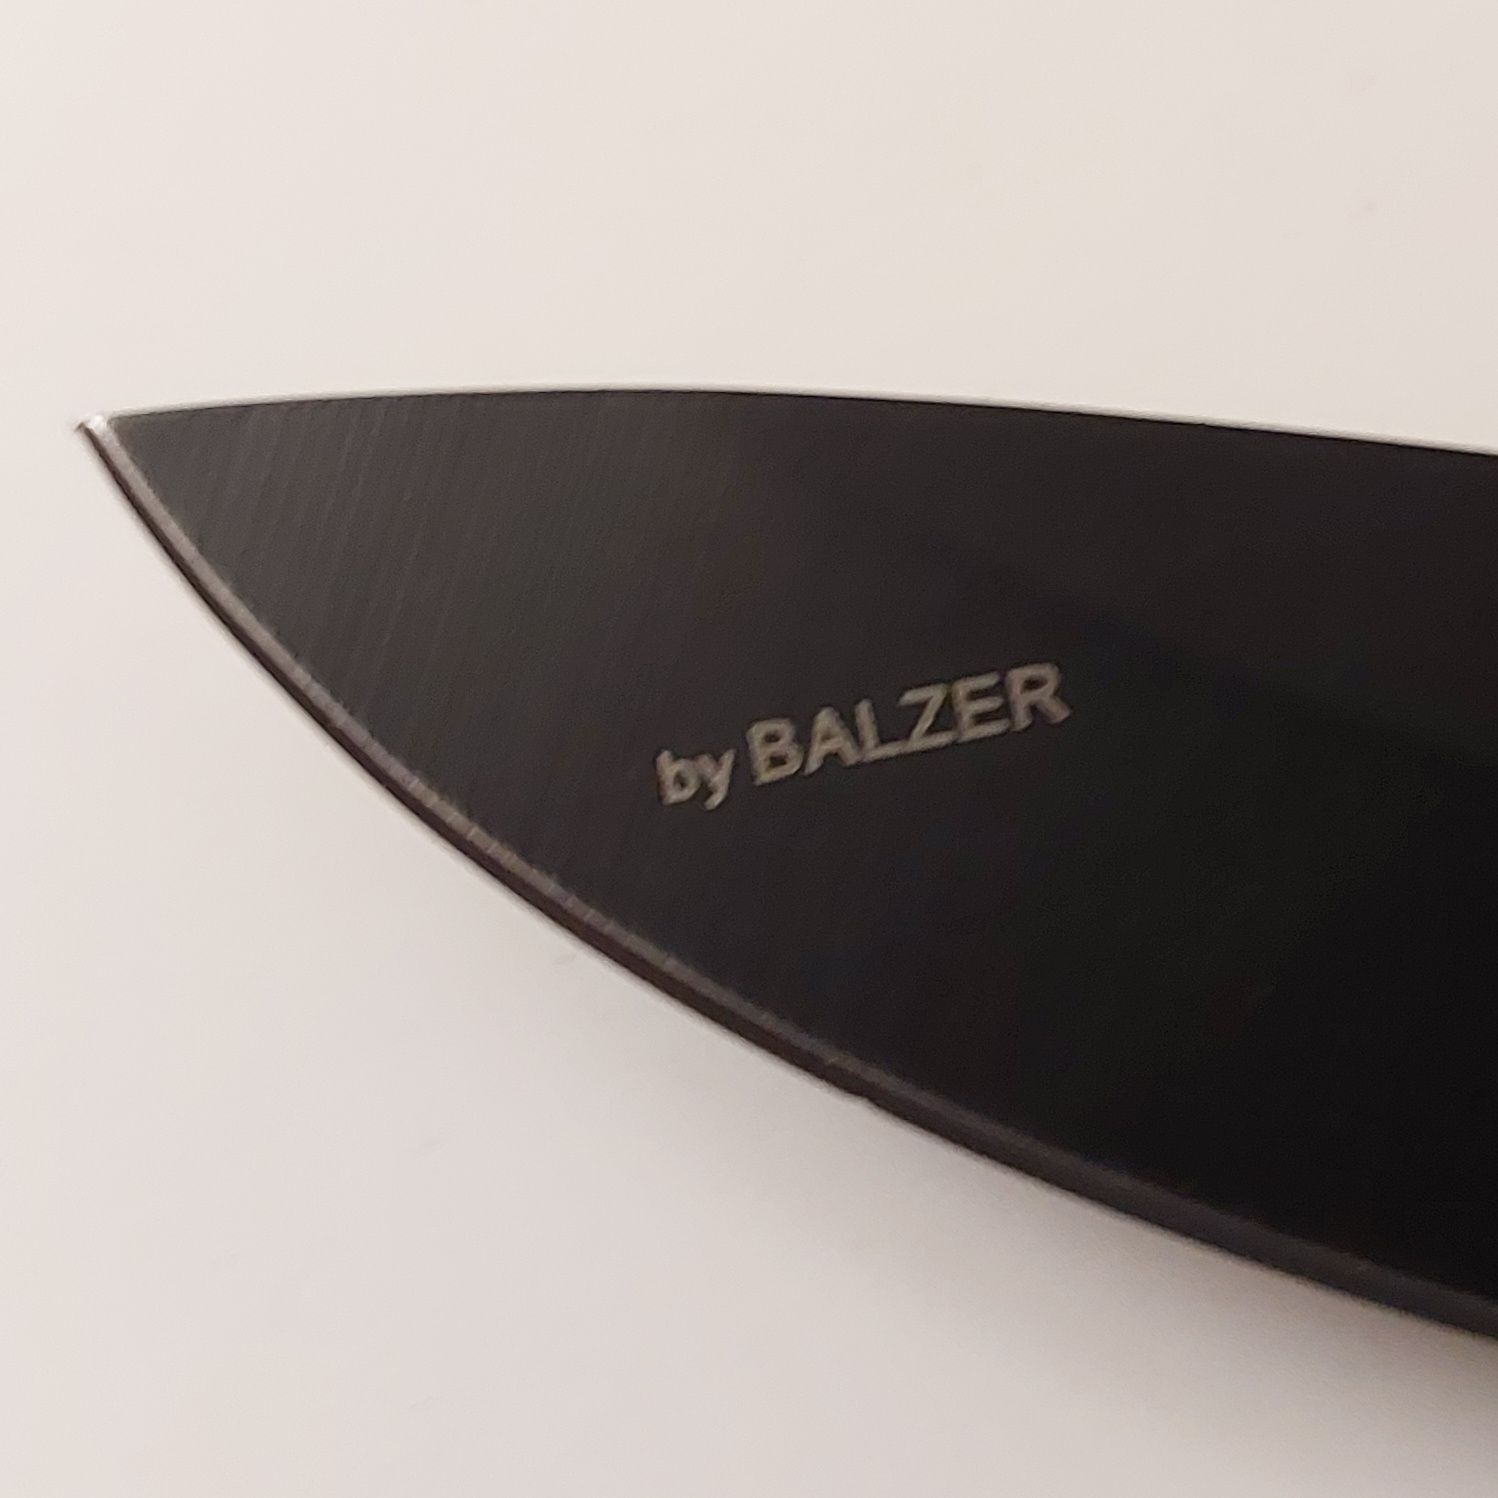 Немецкий нож с пилой Balzer.